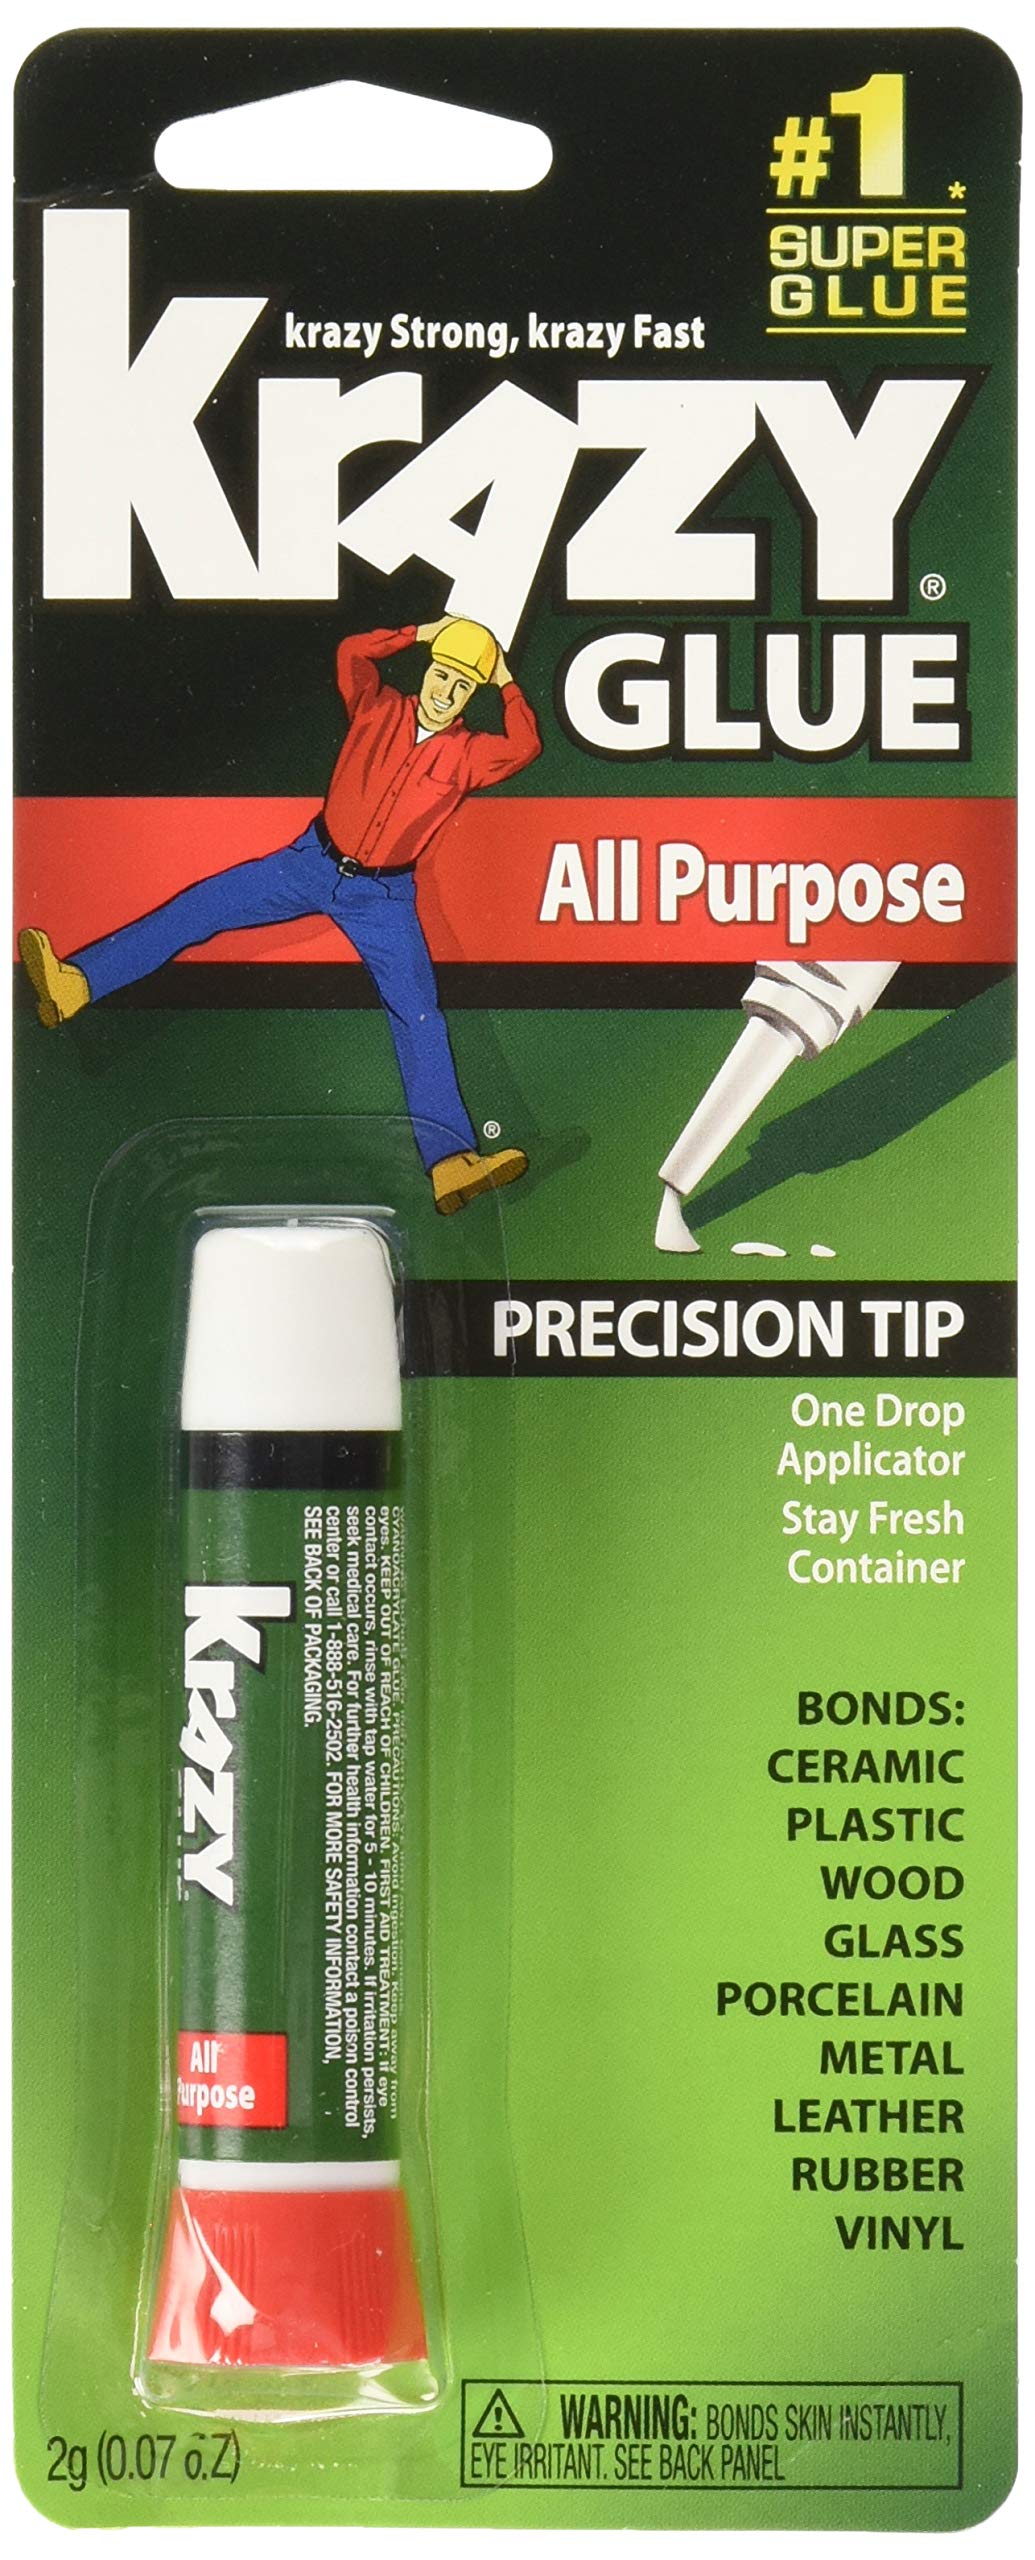 How To Keep Super Glue Fresh